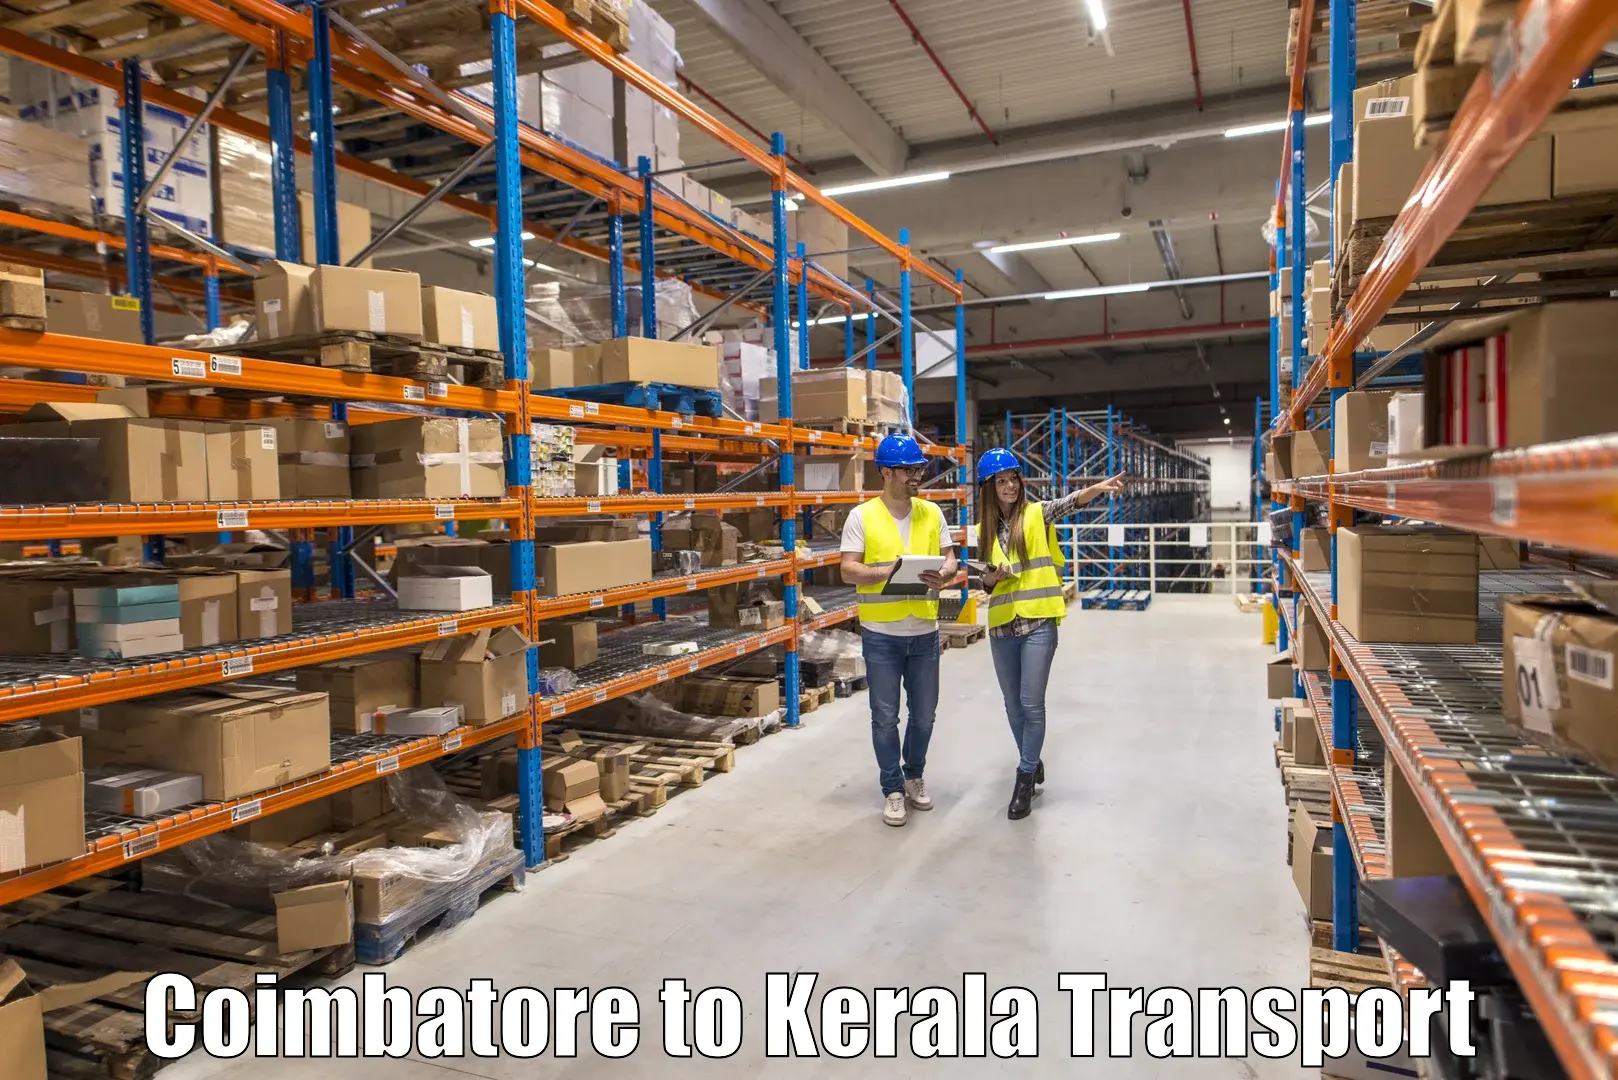 Online transport Coimbatore to Kottayam